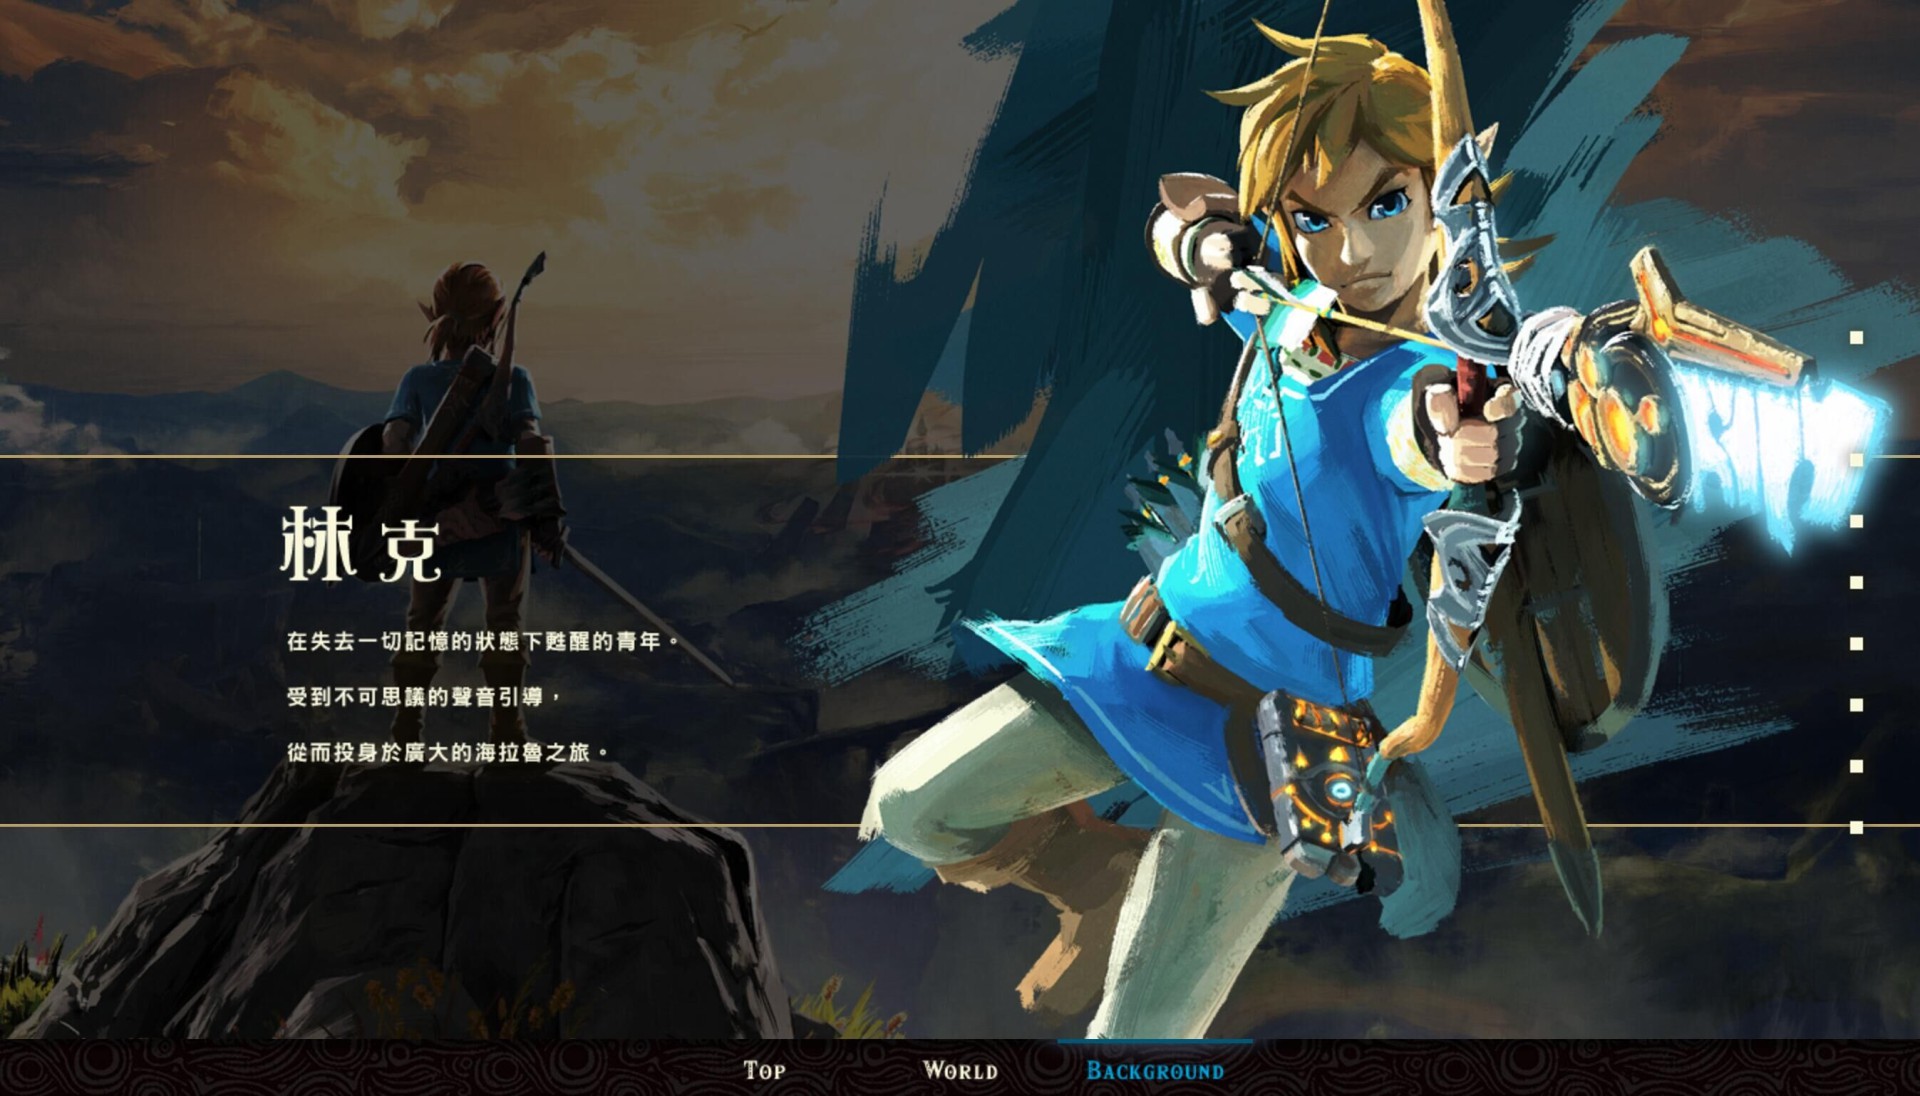 塞尔达(萨尔达)都已采用既定的中文名称,但游戏中的四英杰等角色与